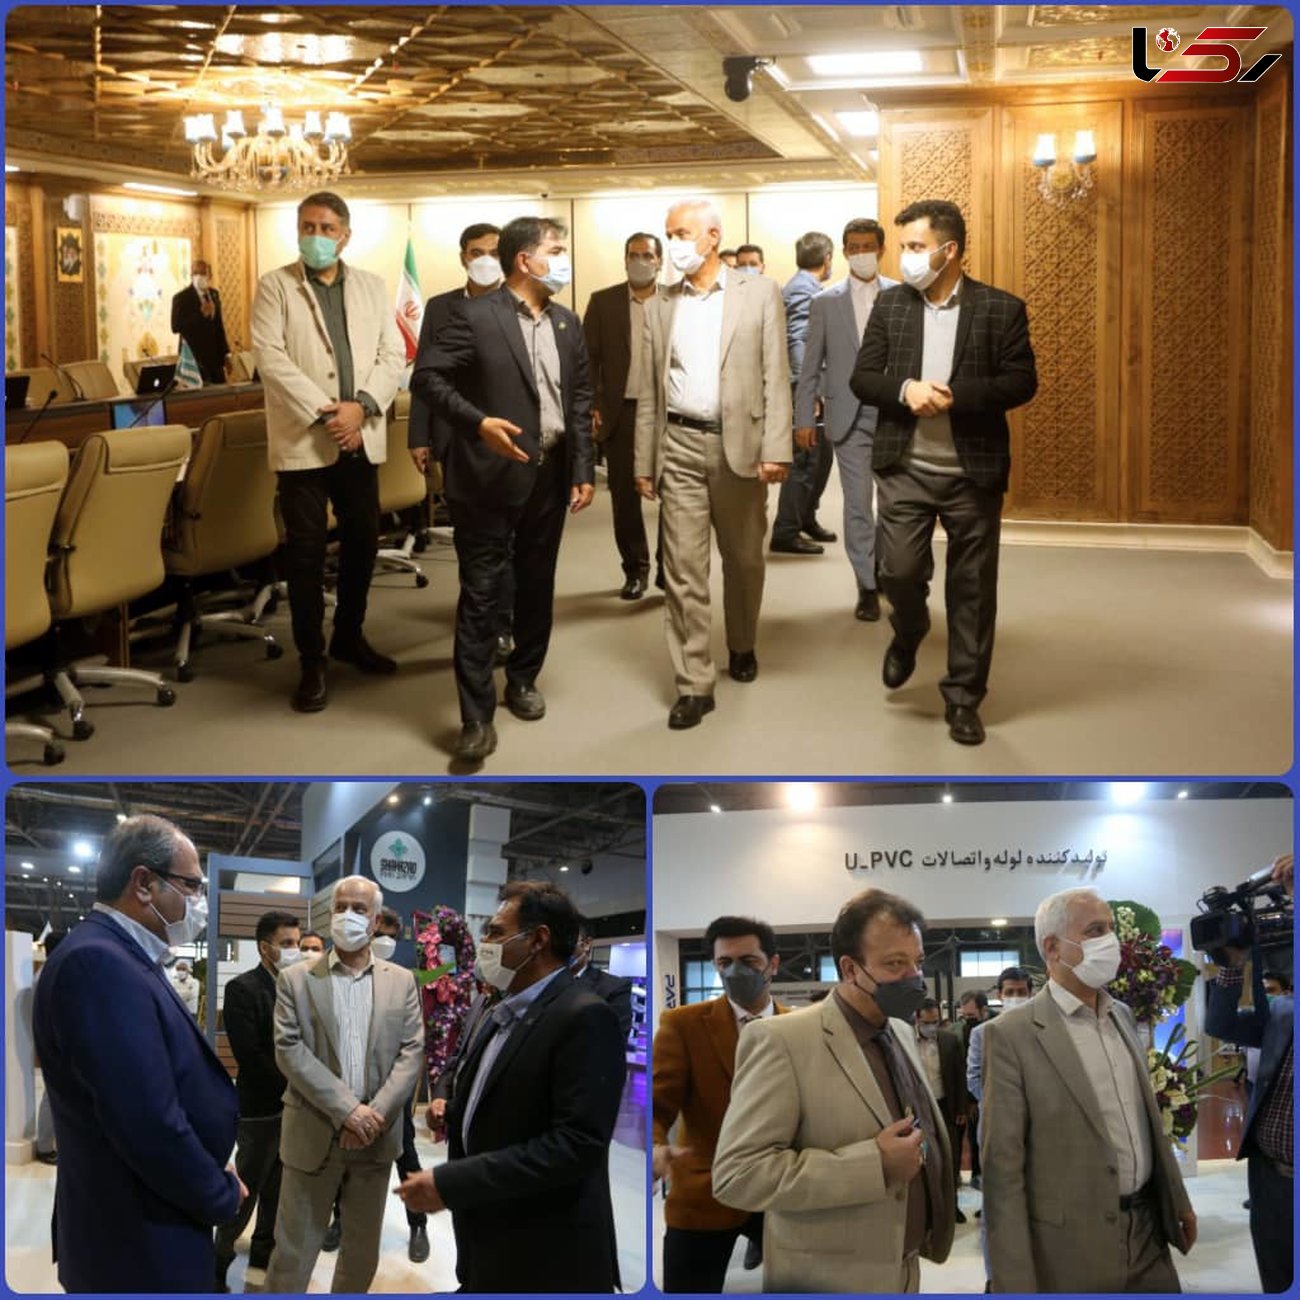 نمایشگاه، نویدبخش روزهای توسعه و رونق اقتصادی در اصفهان